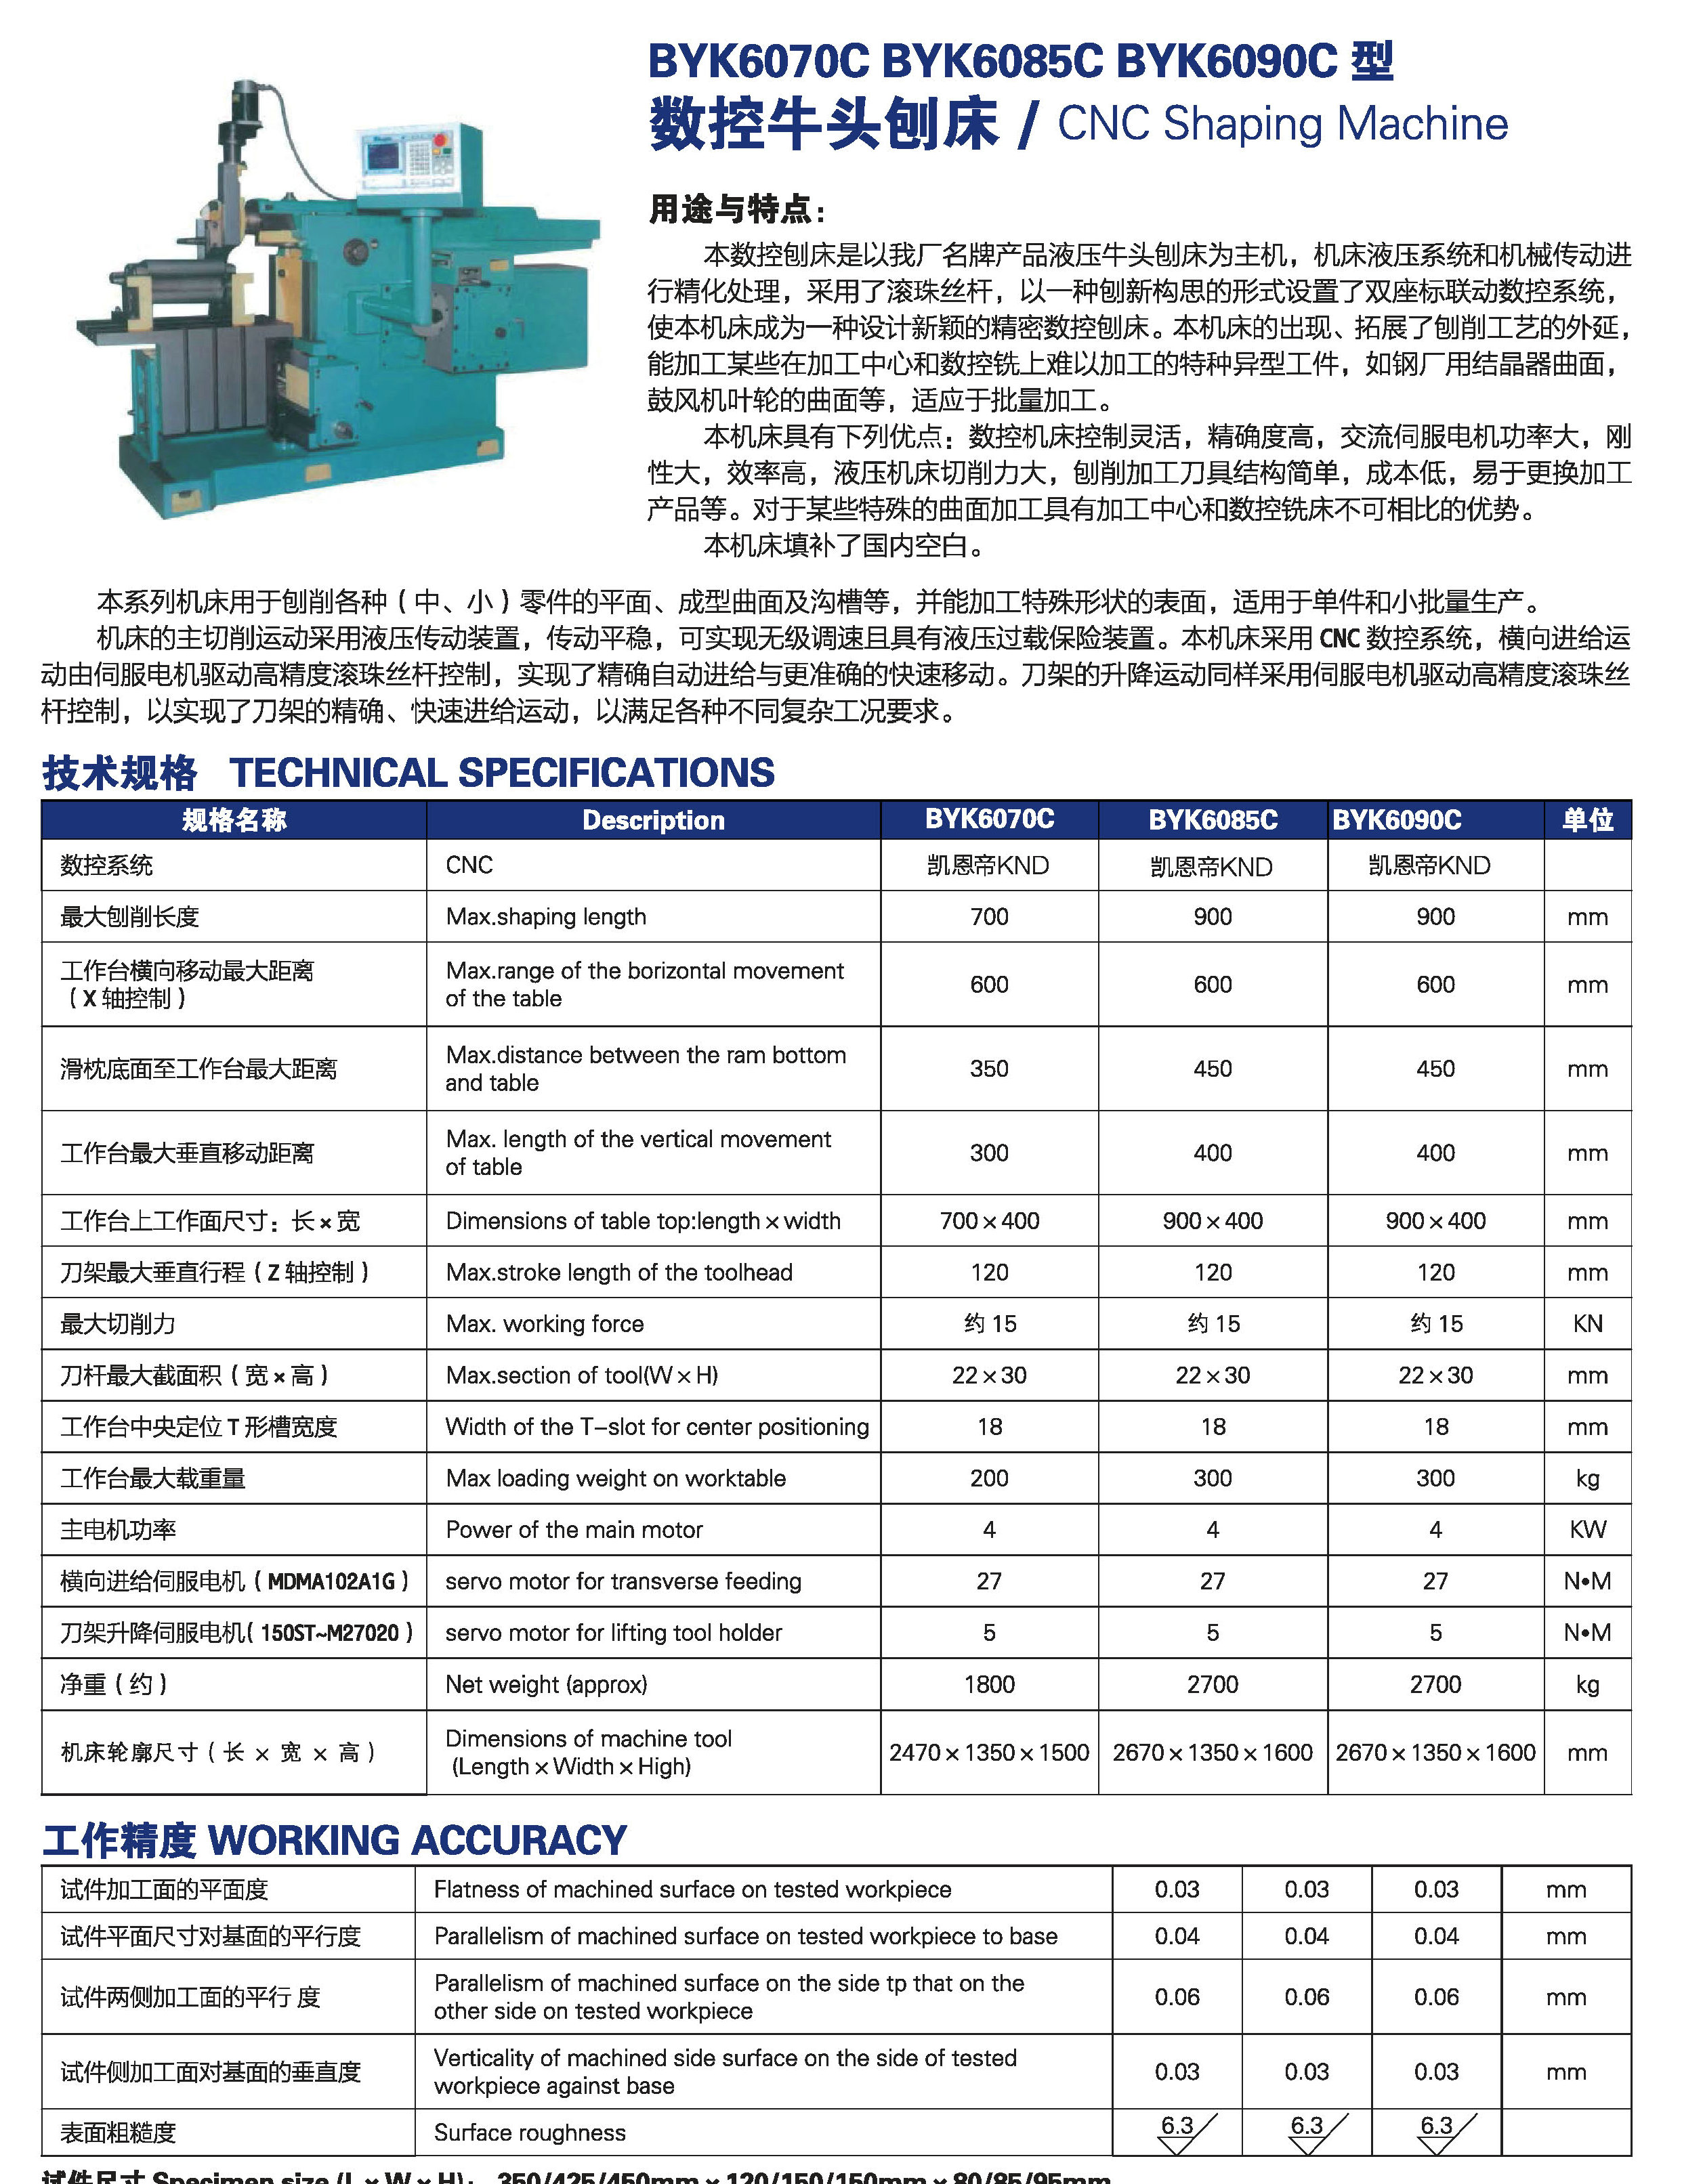 CNC SHAPING MACHINE BYK6070C-BYK6085C-BYK6090C